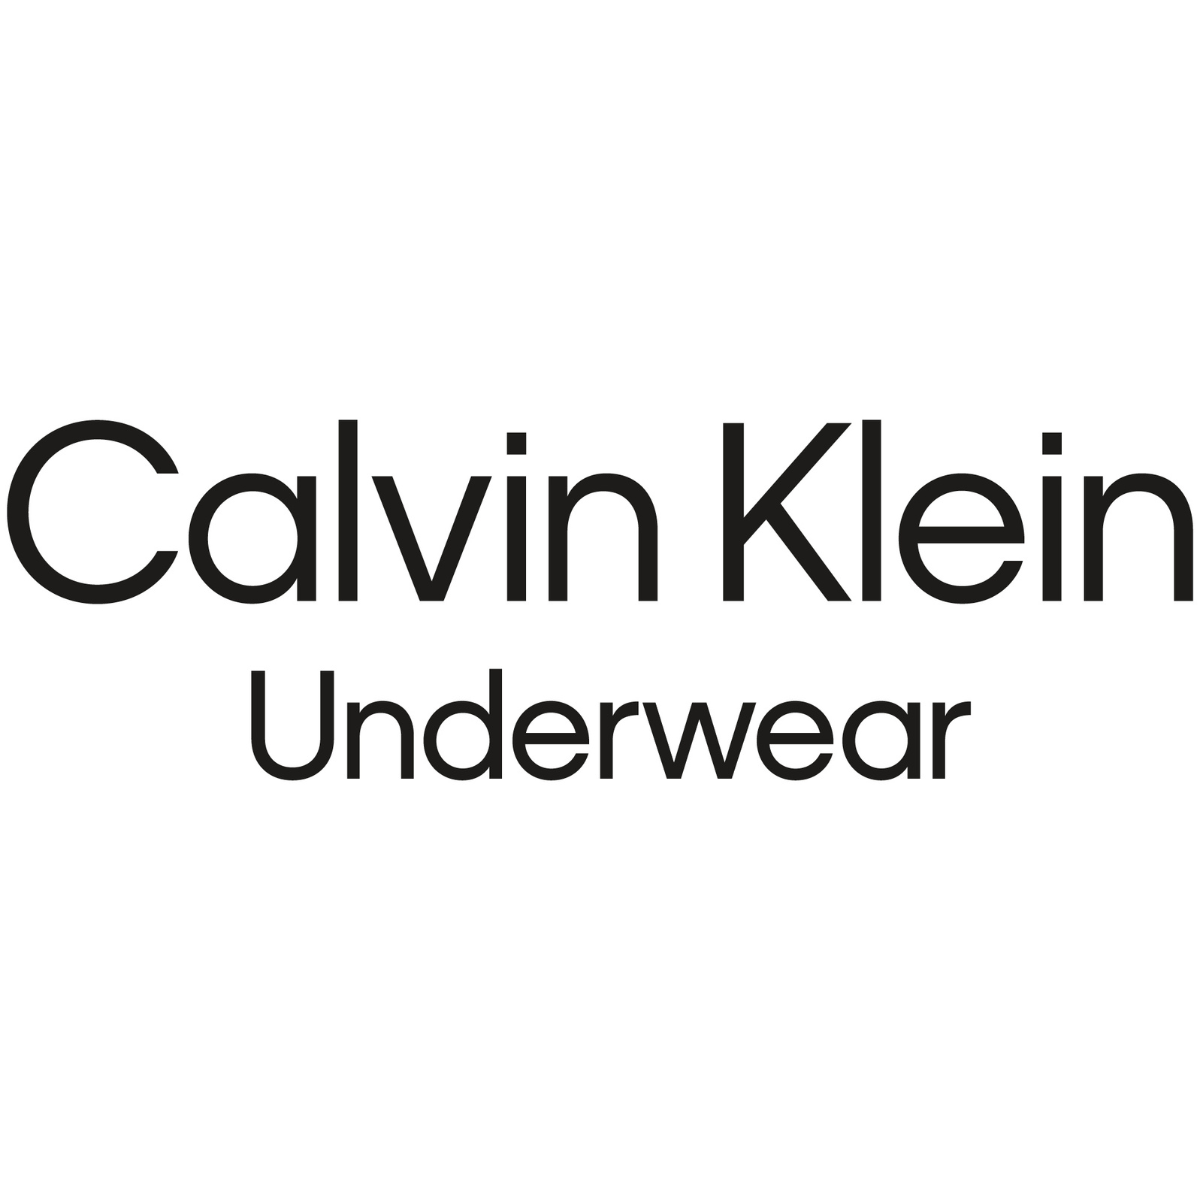 Calvin Klein Underwear at Westfield Bondi Junction